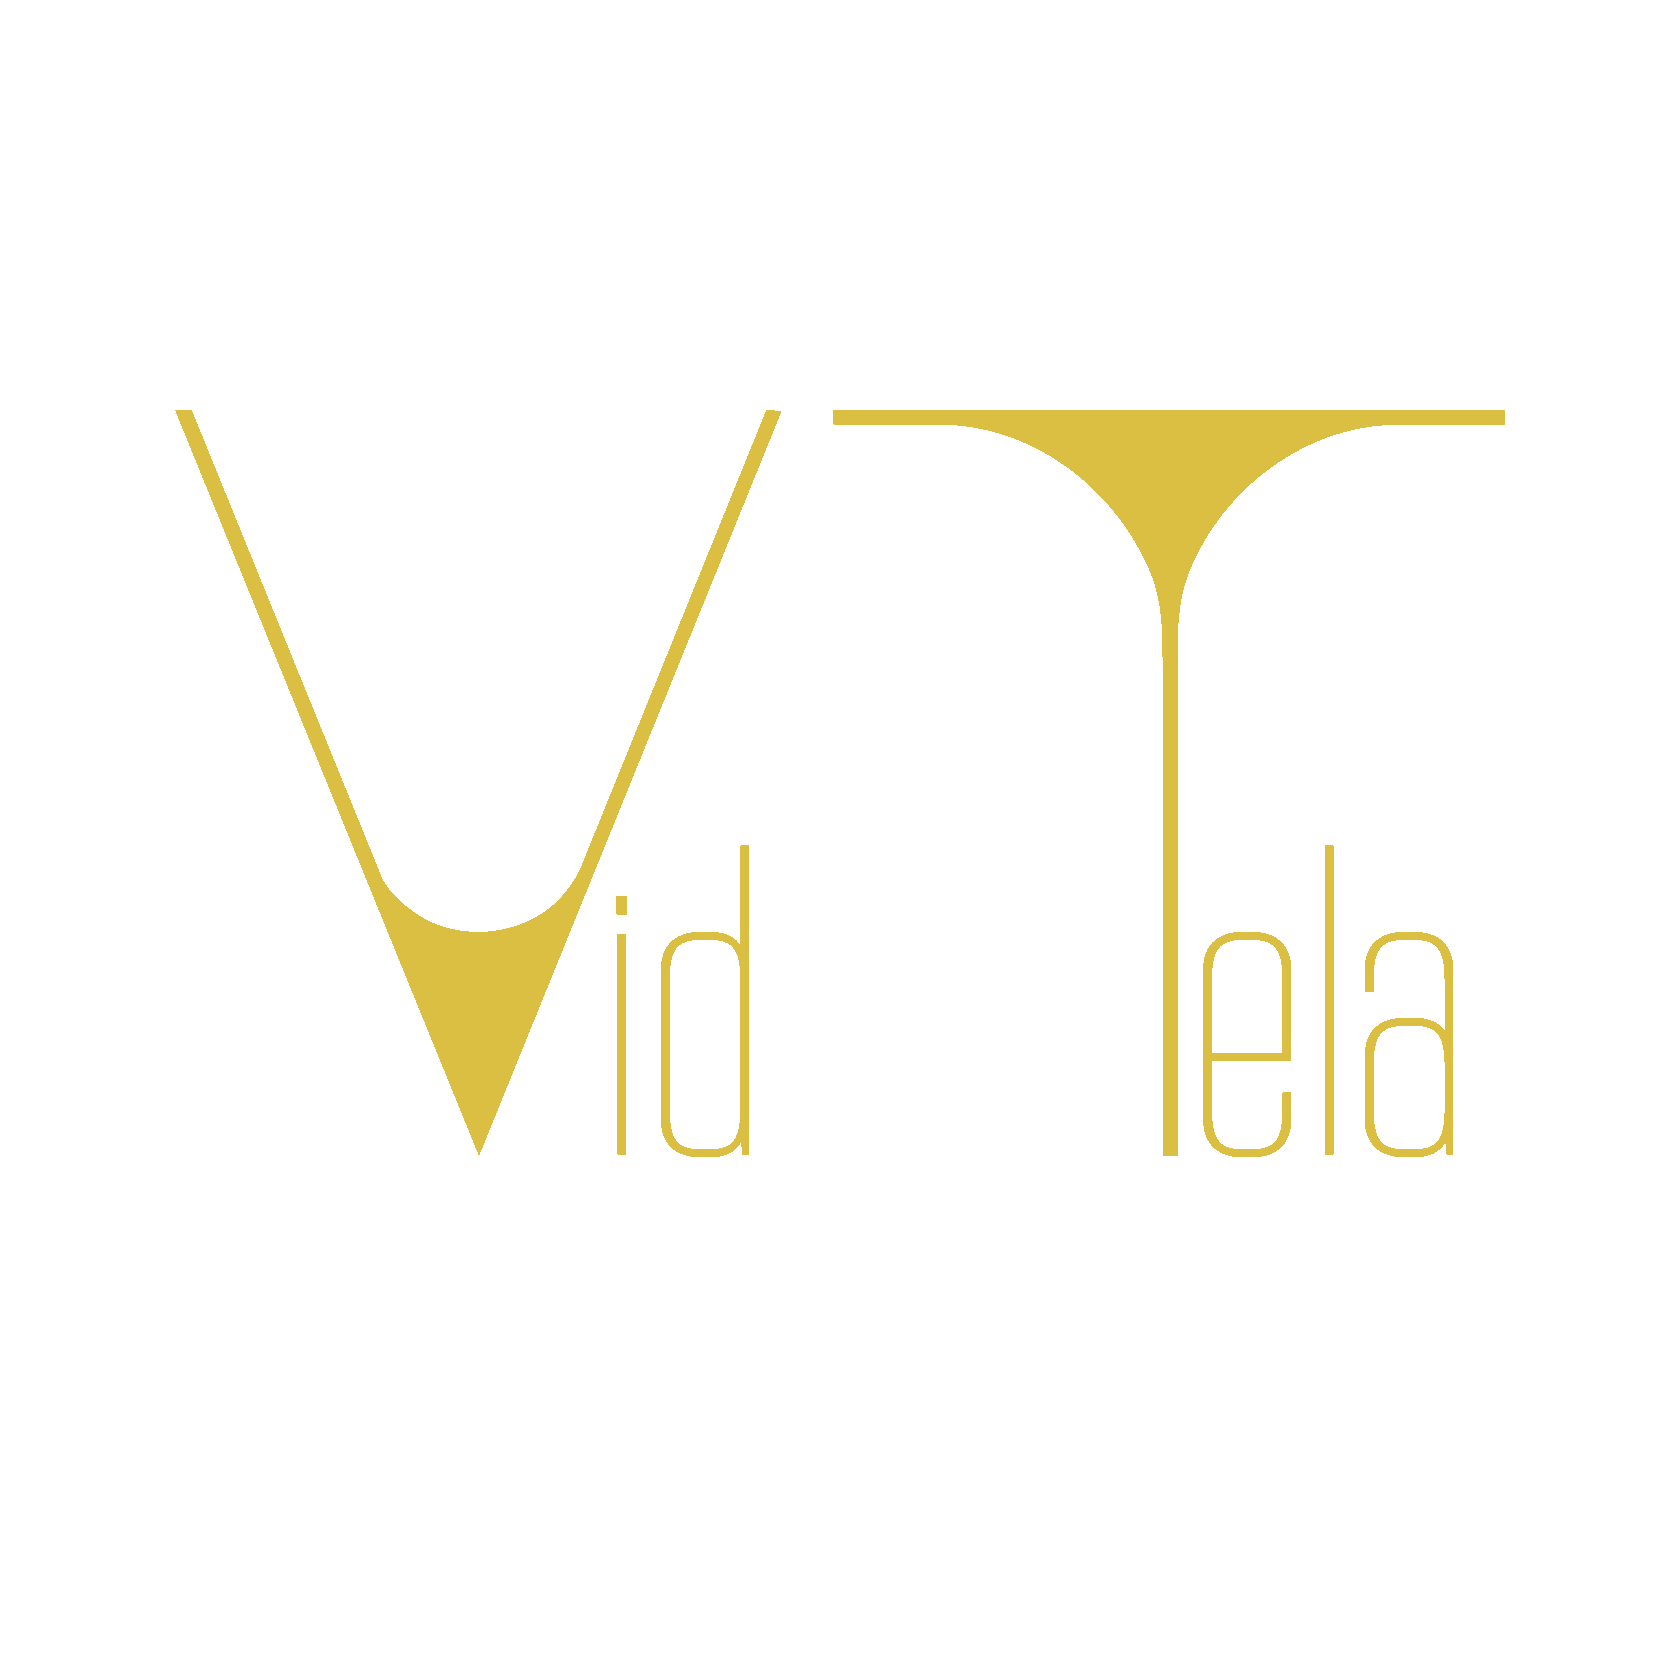 Проект Vid Tela – персональный женский тренер вашего тела и эмоций